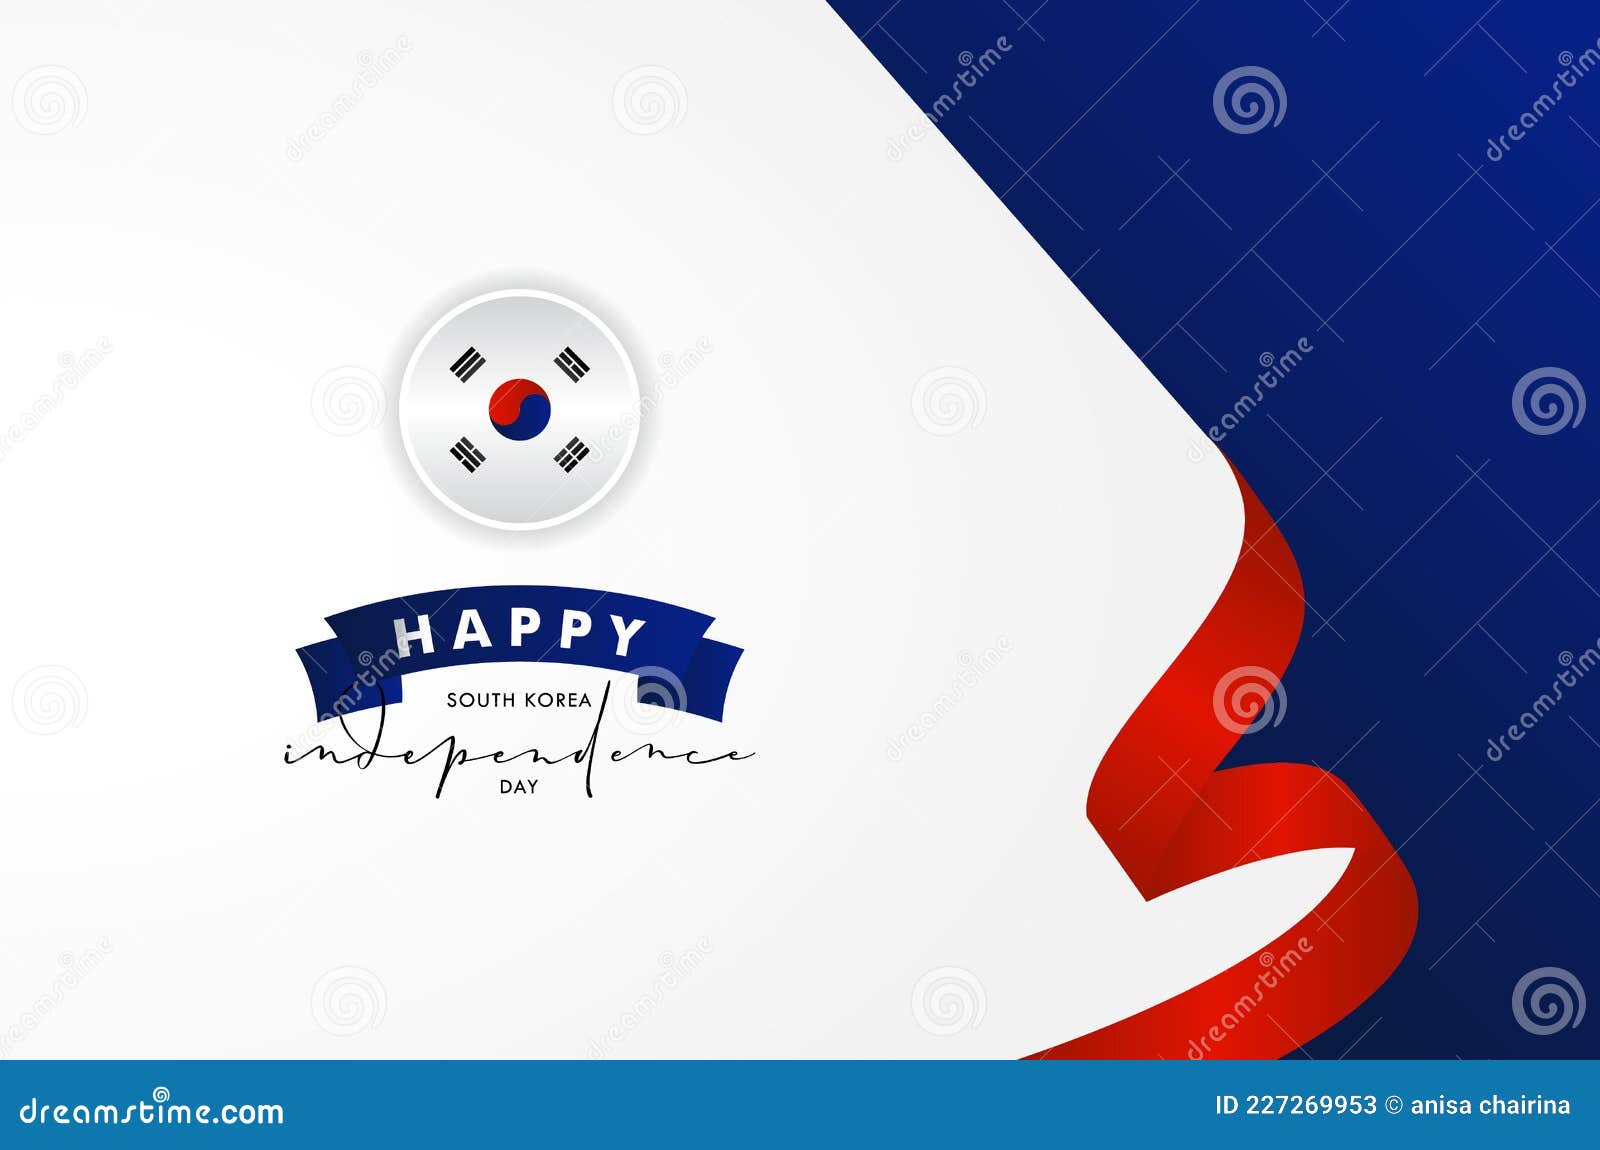 Mẫu nền độc lập ngày Quốc khánh Hàn Quốc là lựa chọn hoàn hảo để thể hiện tình yêu và tự hào dân tộc Hàn Quốc. Hãy đến với hình ảnh liên quan để tìm hiểu hơn về ngày lễ đặc biệt này. 